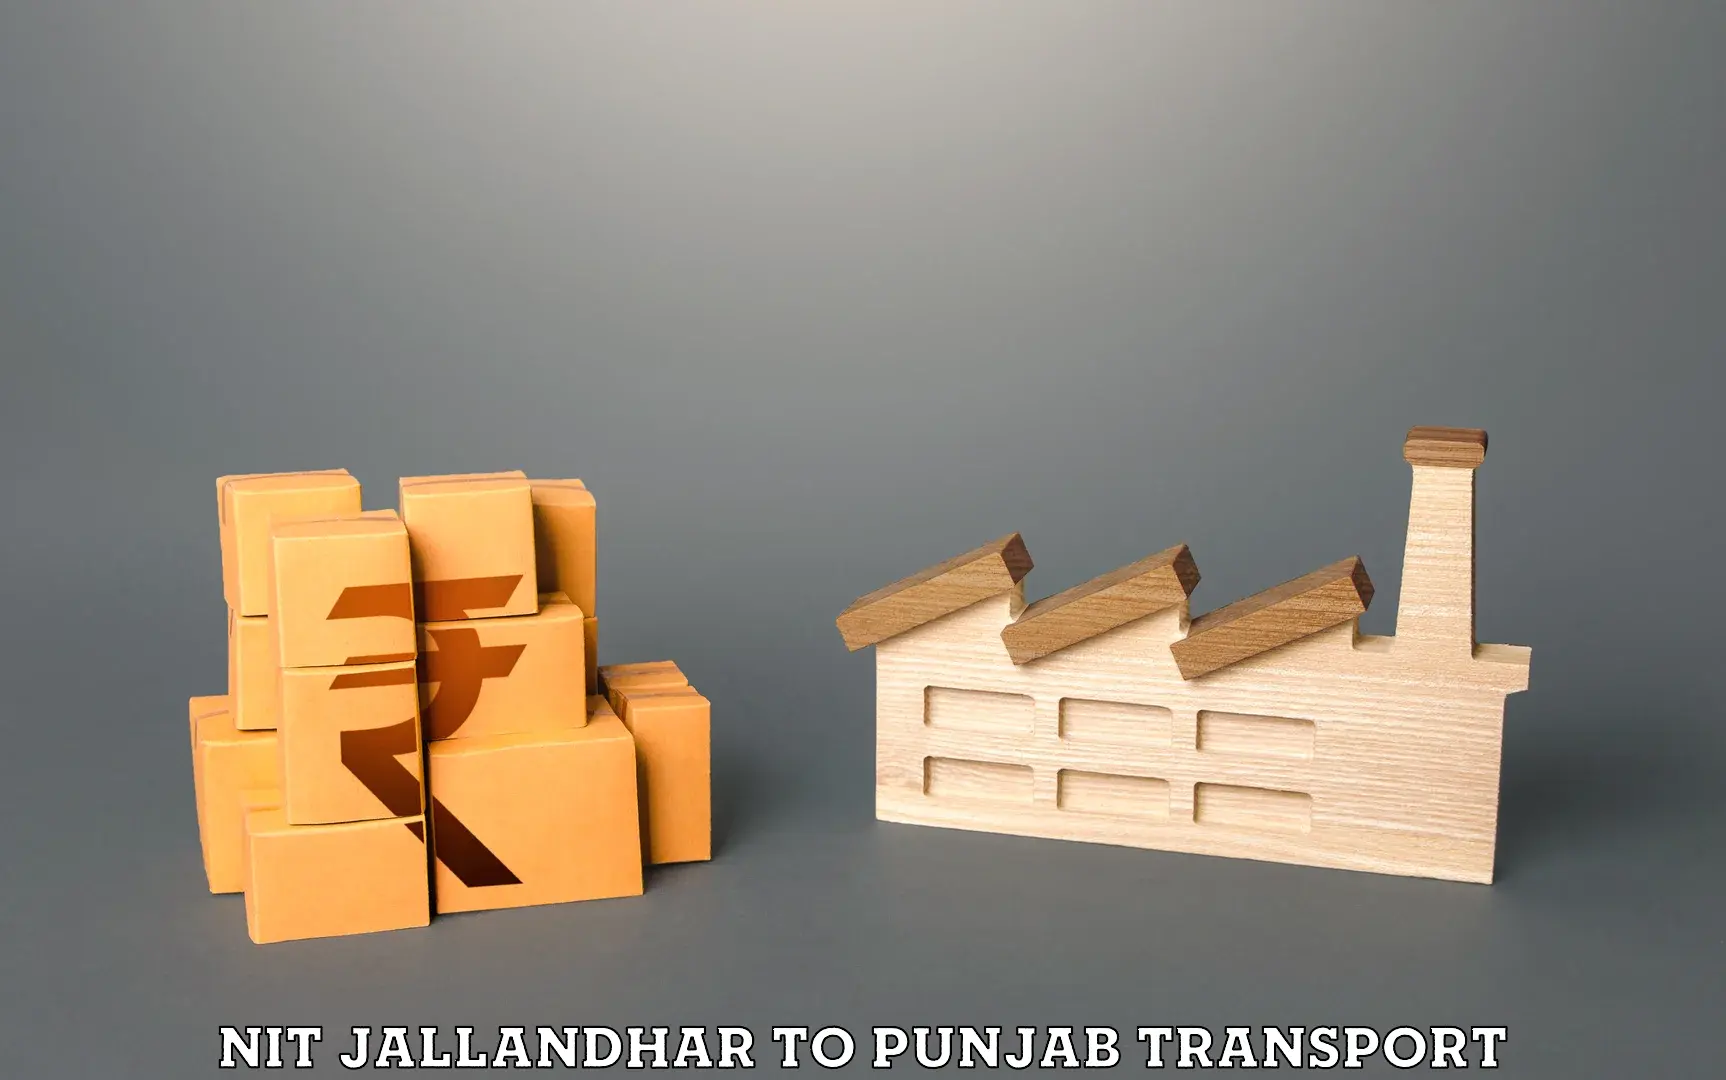 Daily transport service NIT Jallandhar to Punjab